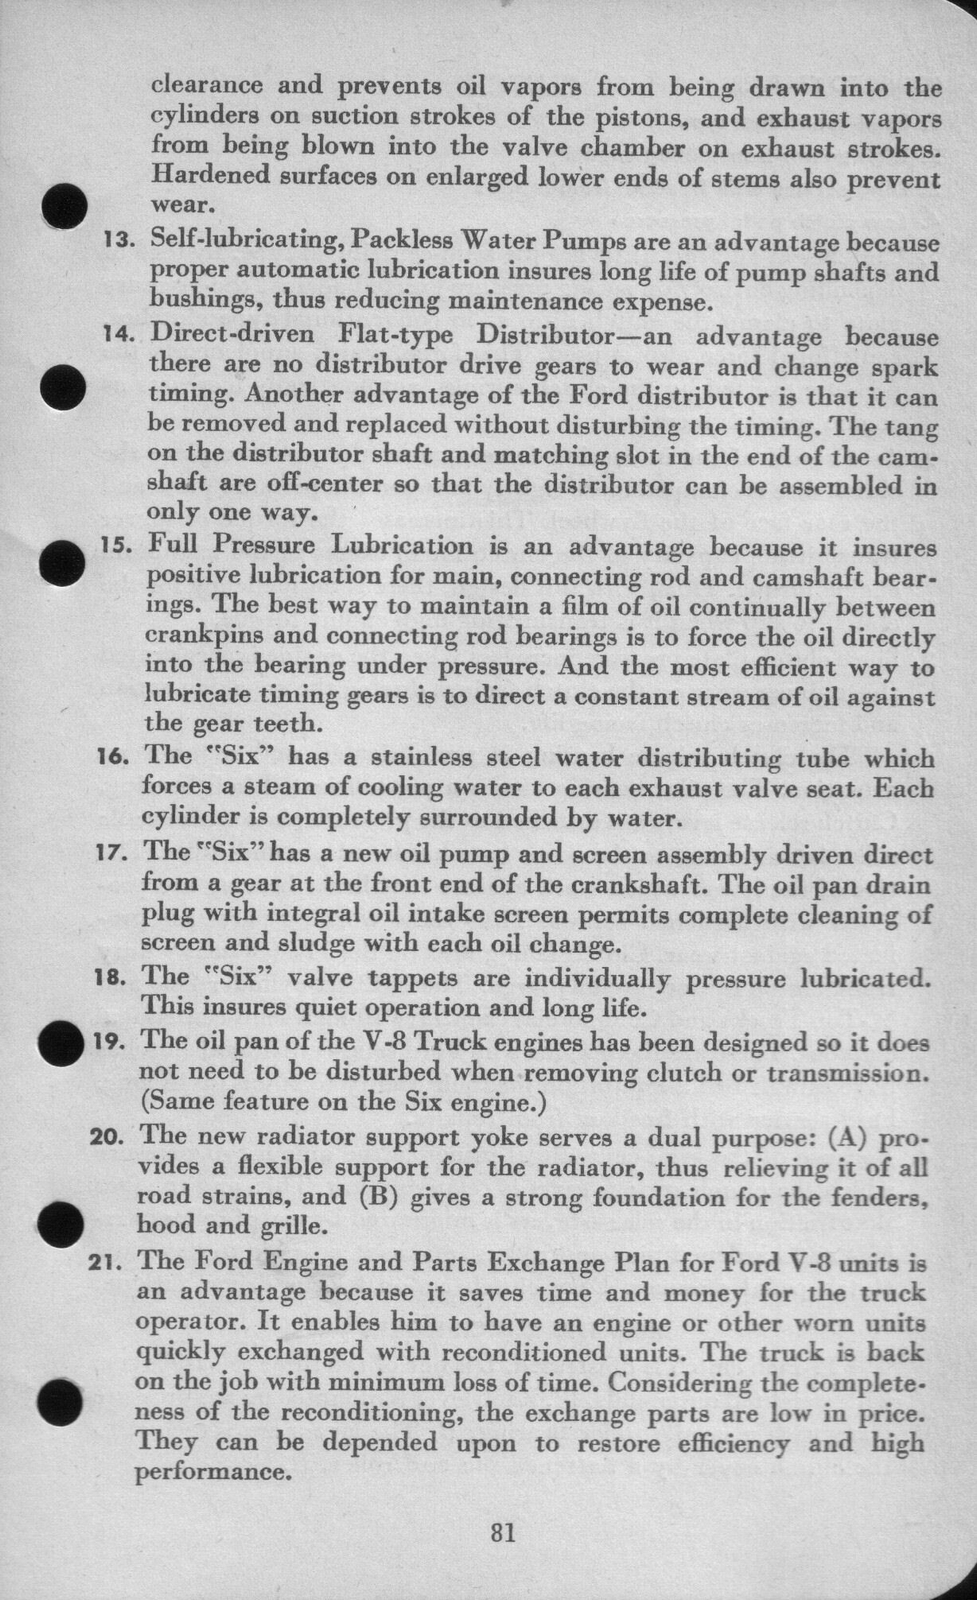 n_1942 Ford Salesmans Reference Manual-081.jpg